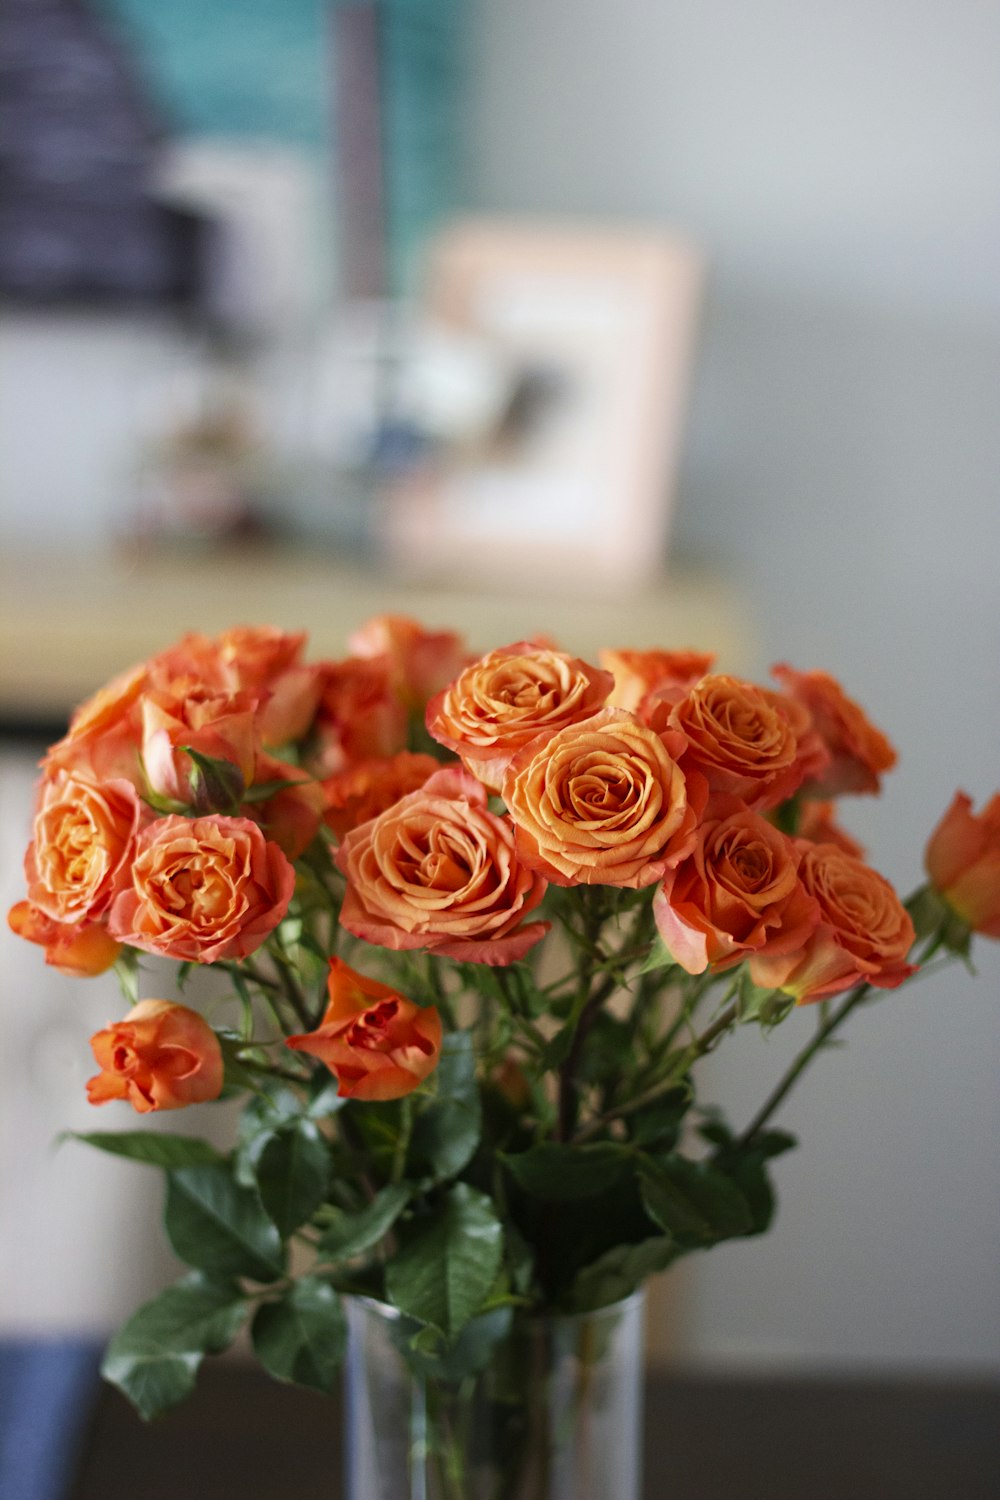 透明なガラスの花瓶にオレンジ色のバラ